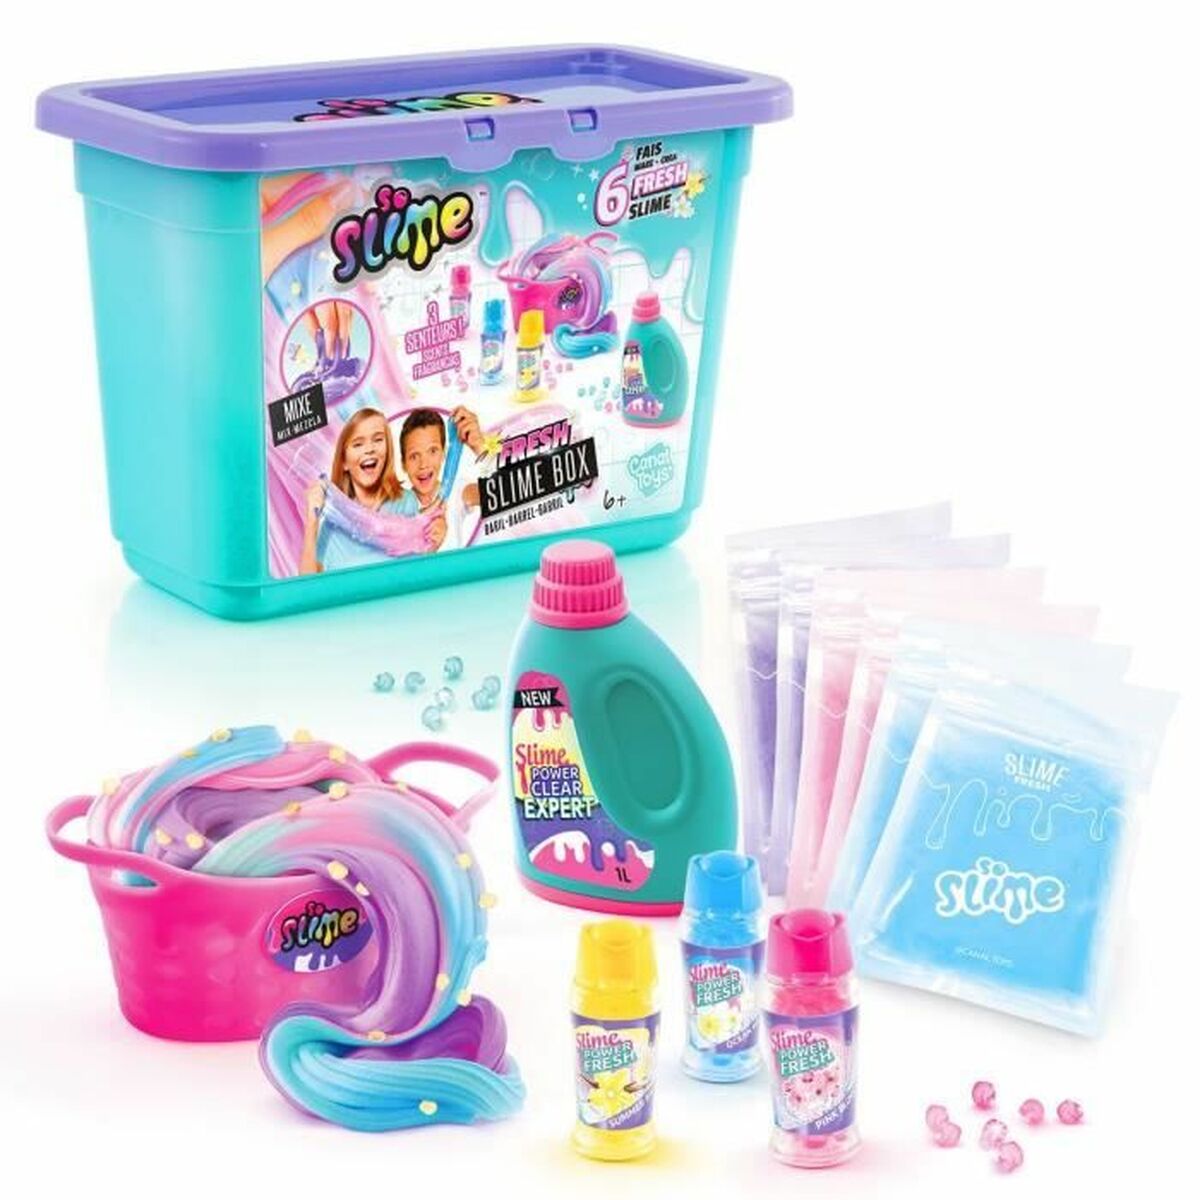 Gioco Canal Toys Fresh box Slime - Disponibile in 3-4 giorni lavorativi